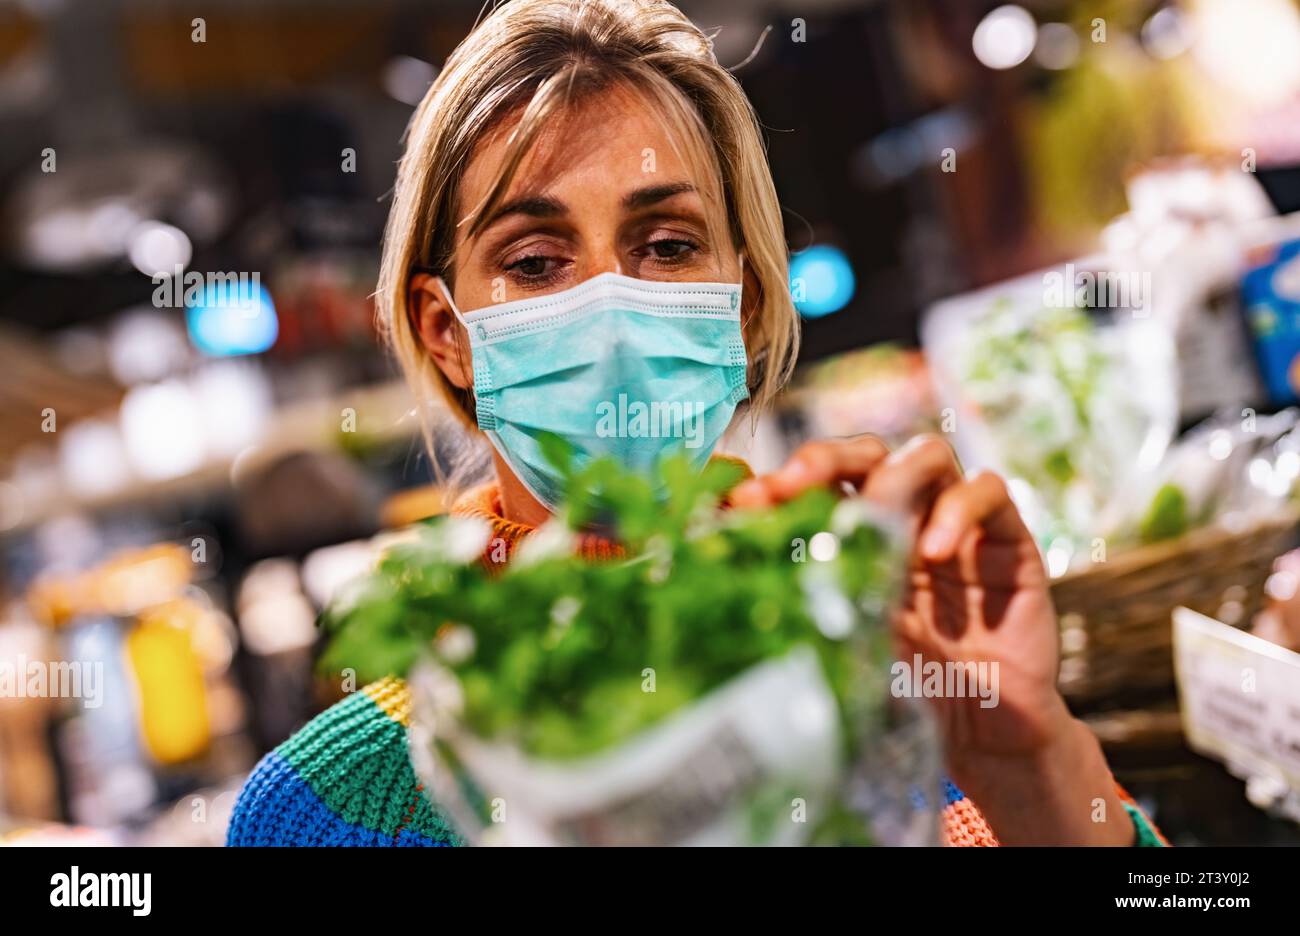 la donna che indossa una maschera facciale azzurra esamina il basilico fresco in un vivace negozio di alimentari o supermercato, circondato da una vasta gamma di prodotti. Sicurezza corona Foto Stock